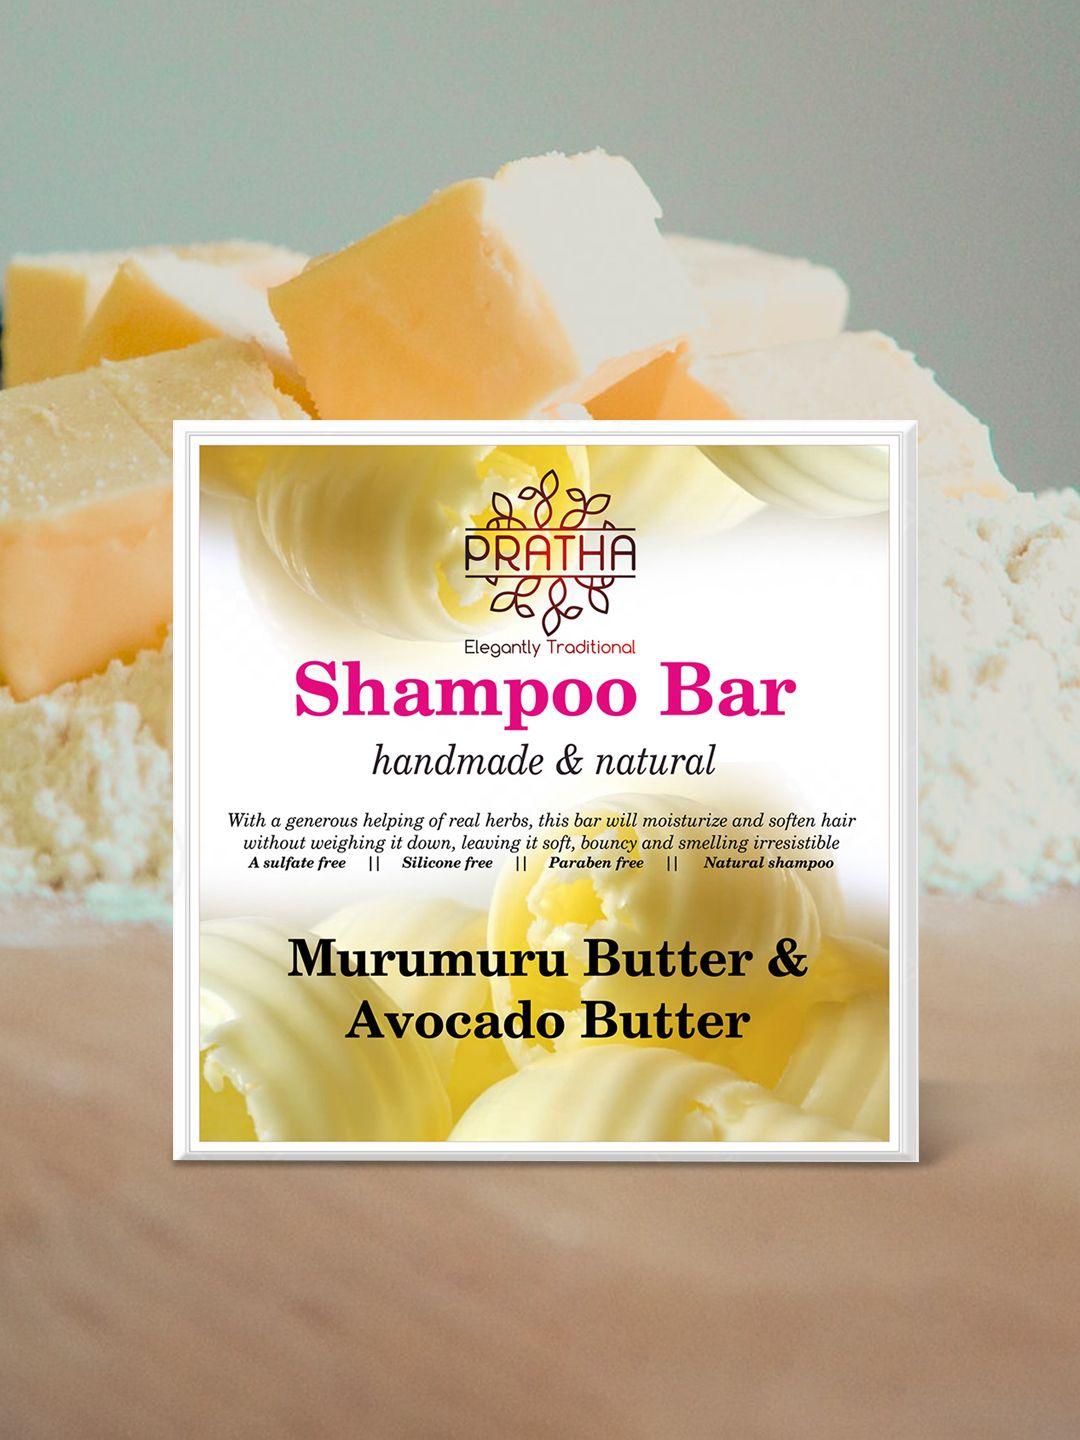 pratha handmade & natural volumizing murumuru butter & avocado butter shampoo bar - 80 gm